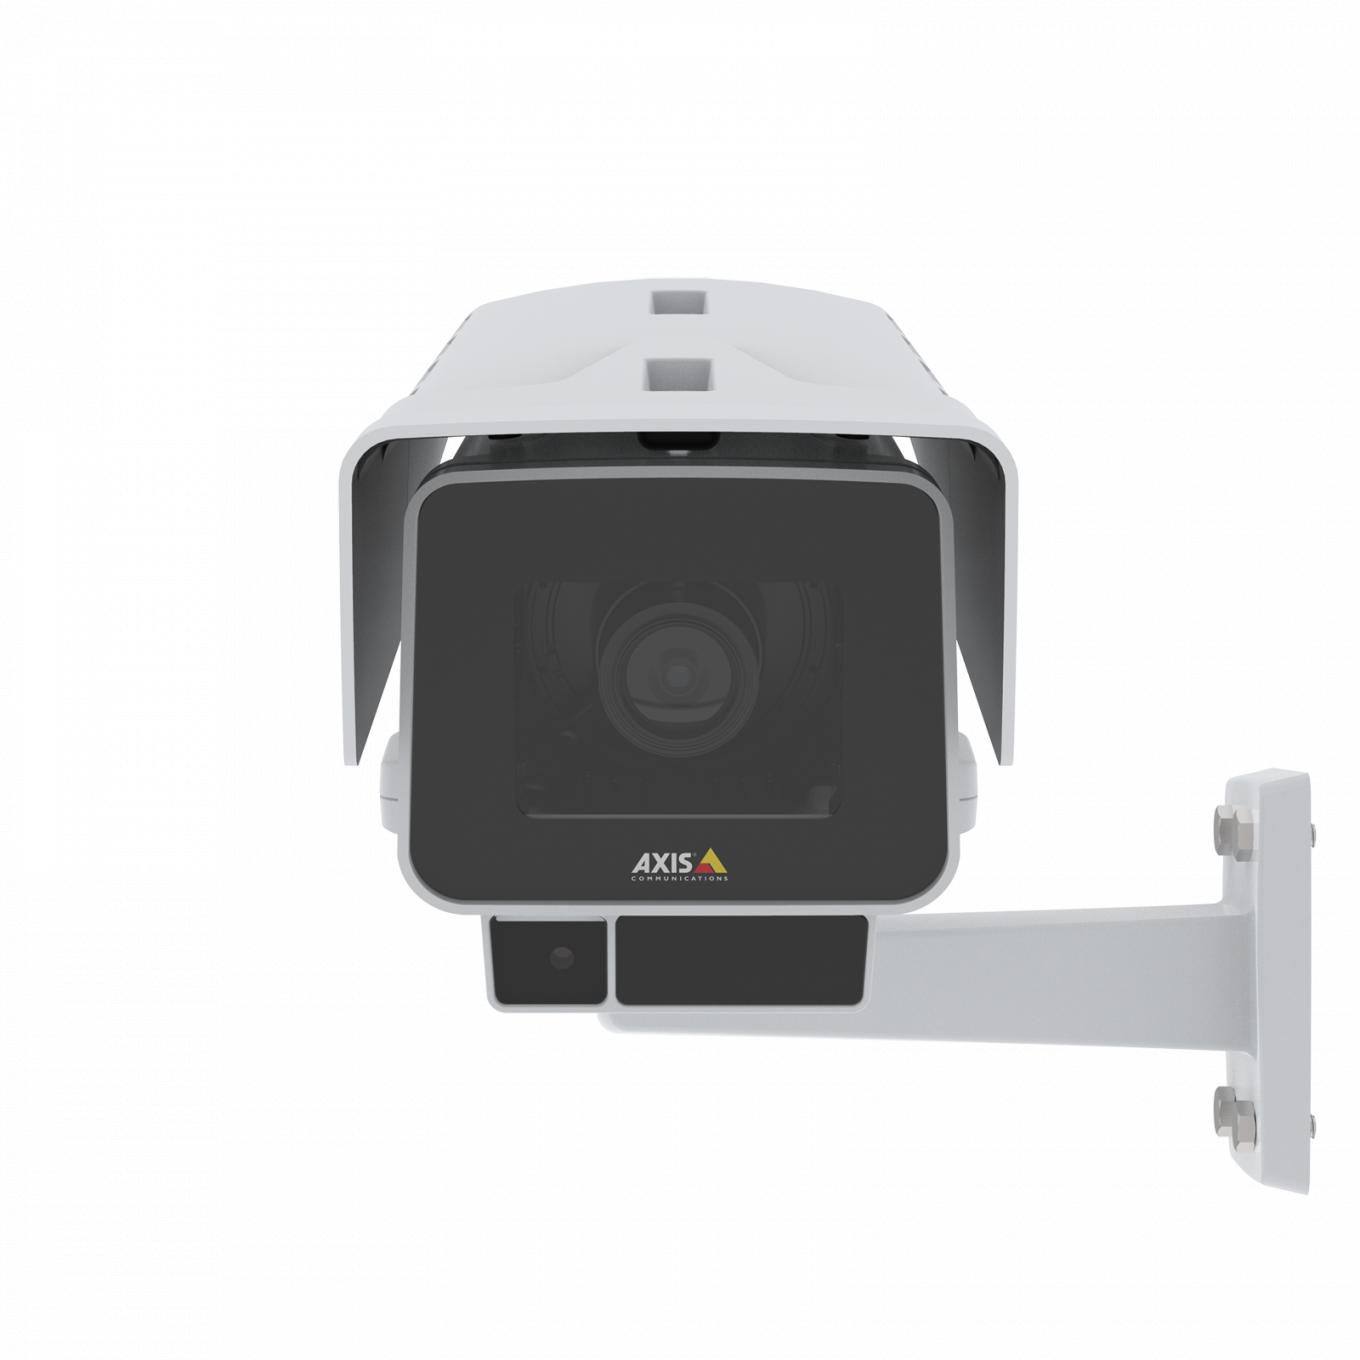 AXIS P1378-LE IP Camera è dotata di stabilizzatore elettronico dell'immagine e OptimizedIR. Il dispositivo è visto dalla parte anteriore.